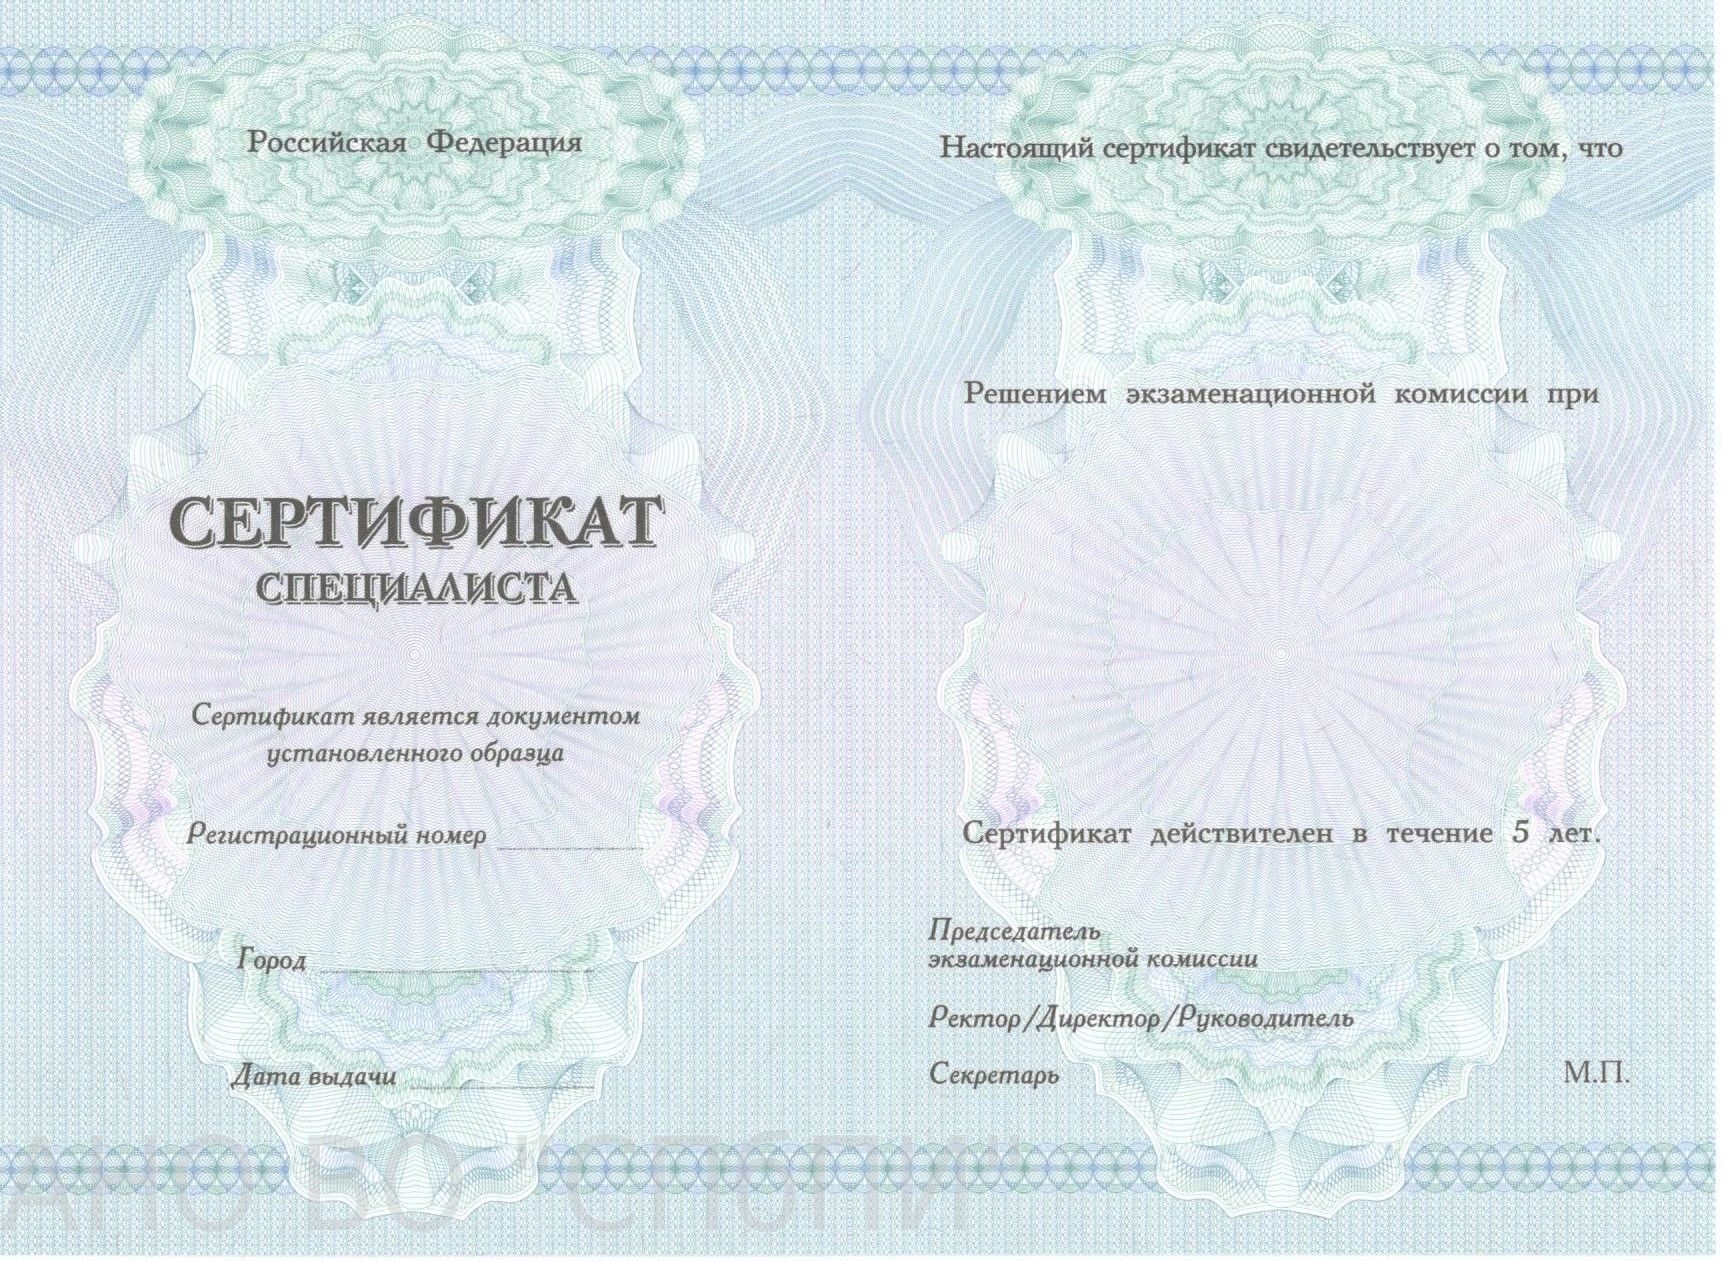 Сертификат медицинский образец